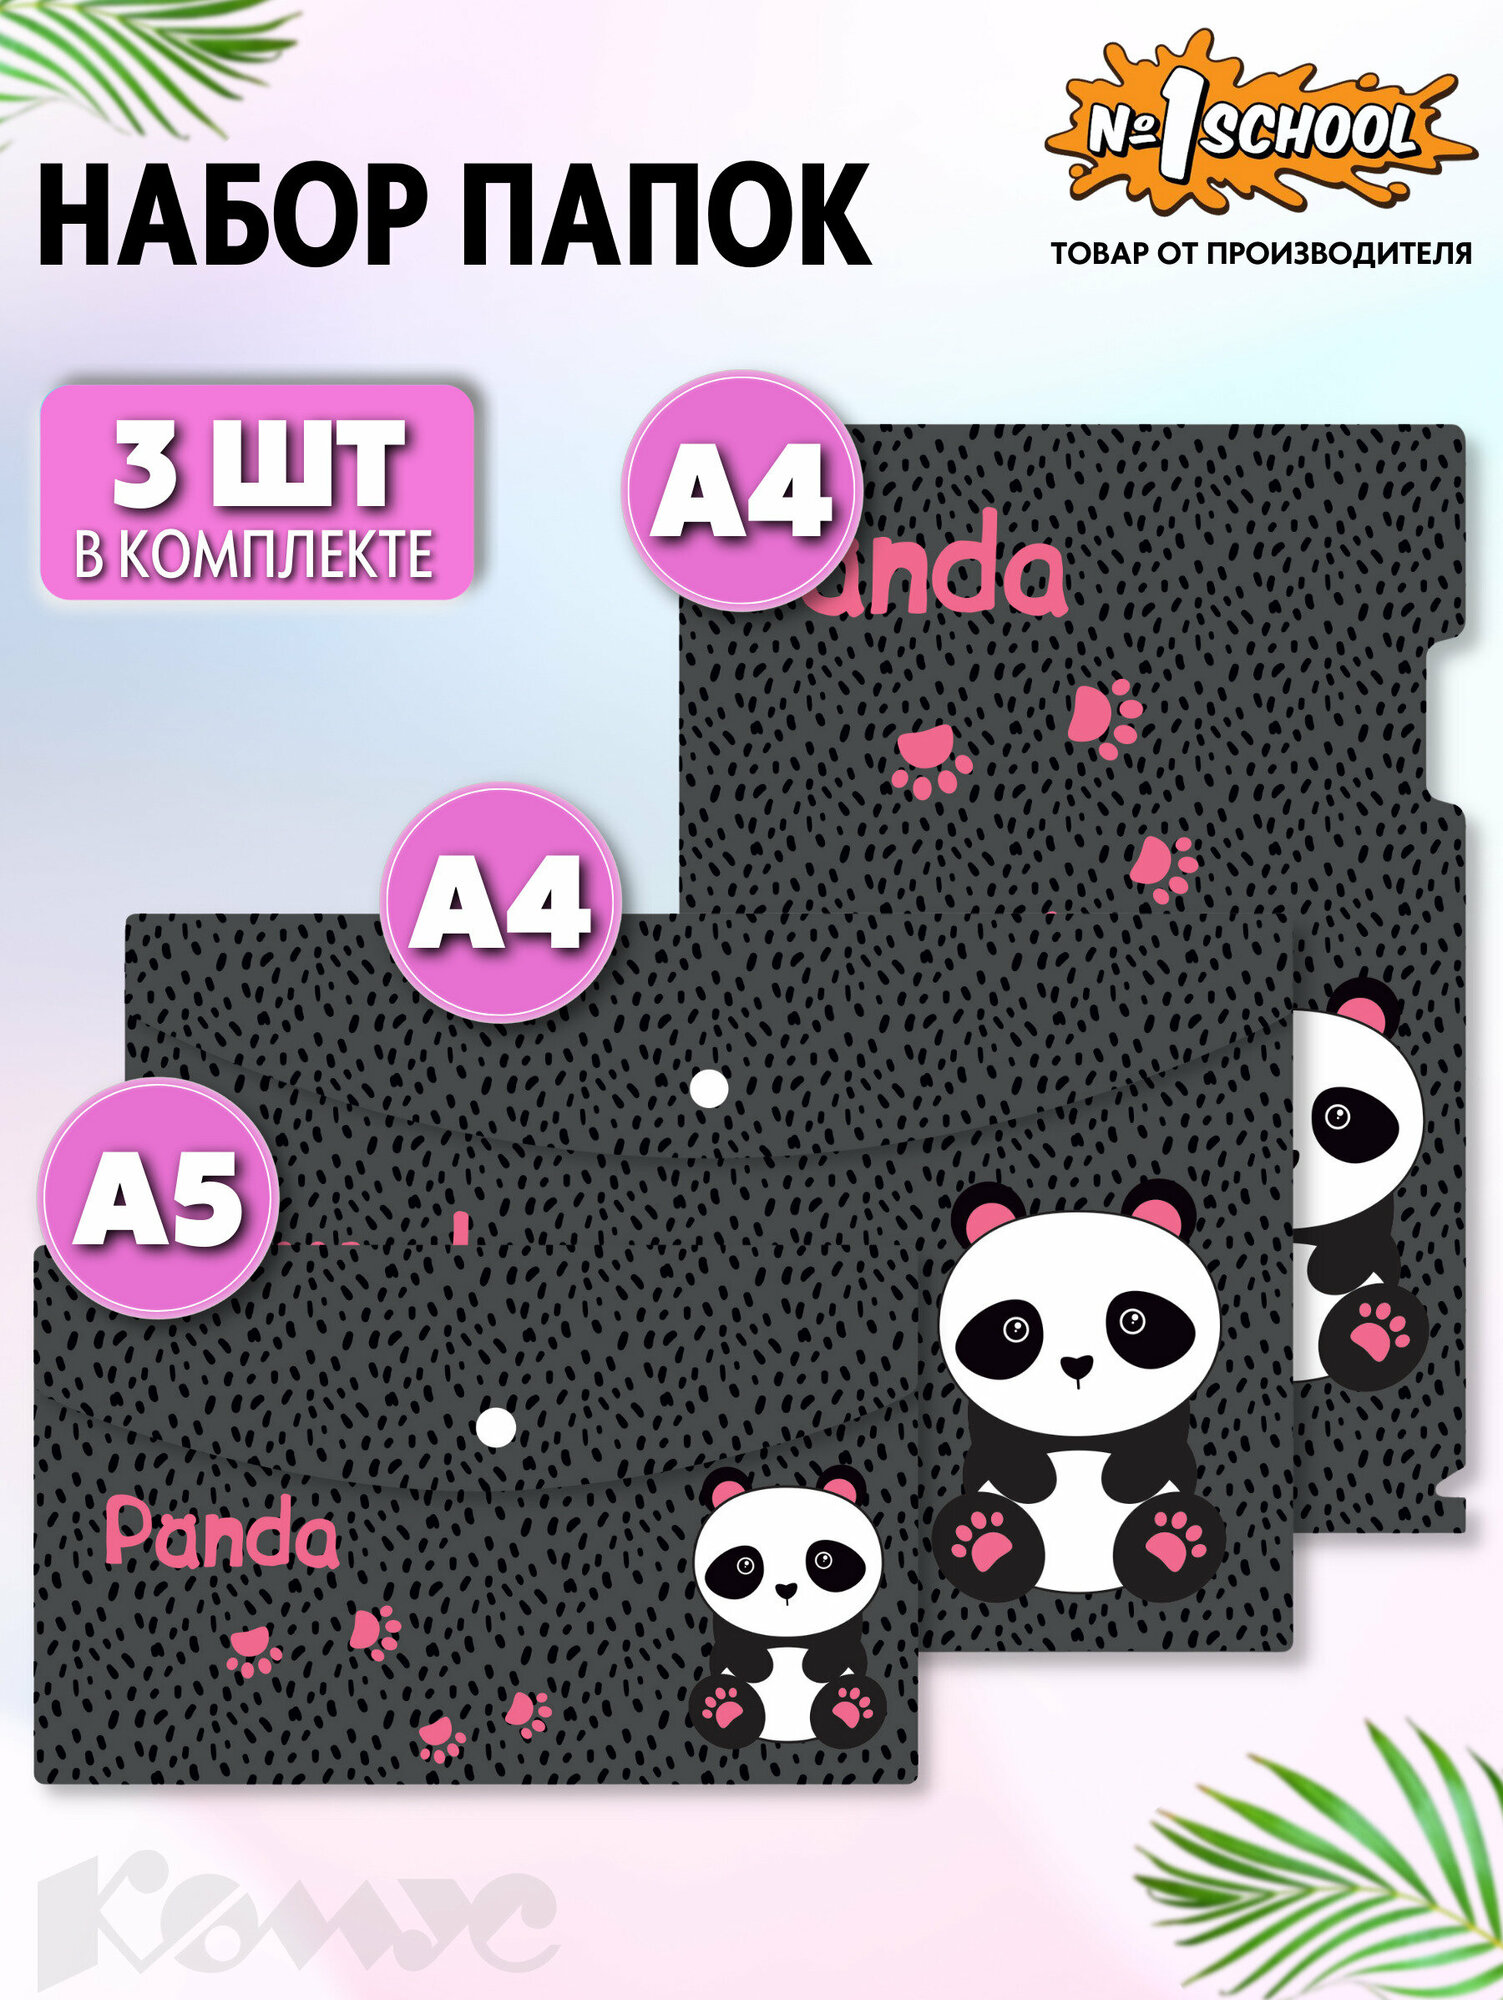 Набор папок №1 School Panda 3 штуки в упаковке (уголок А4, конверт на кнопке А4, А5)